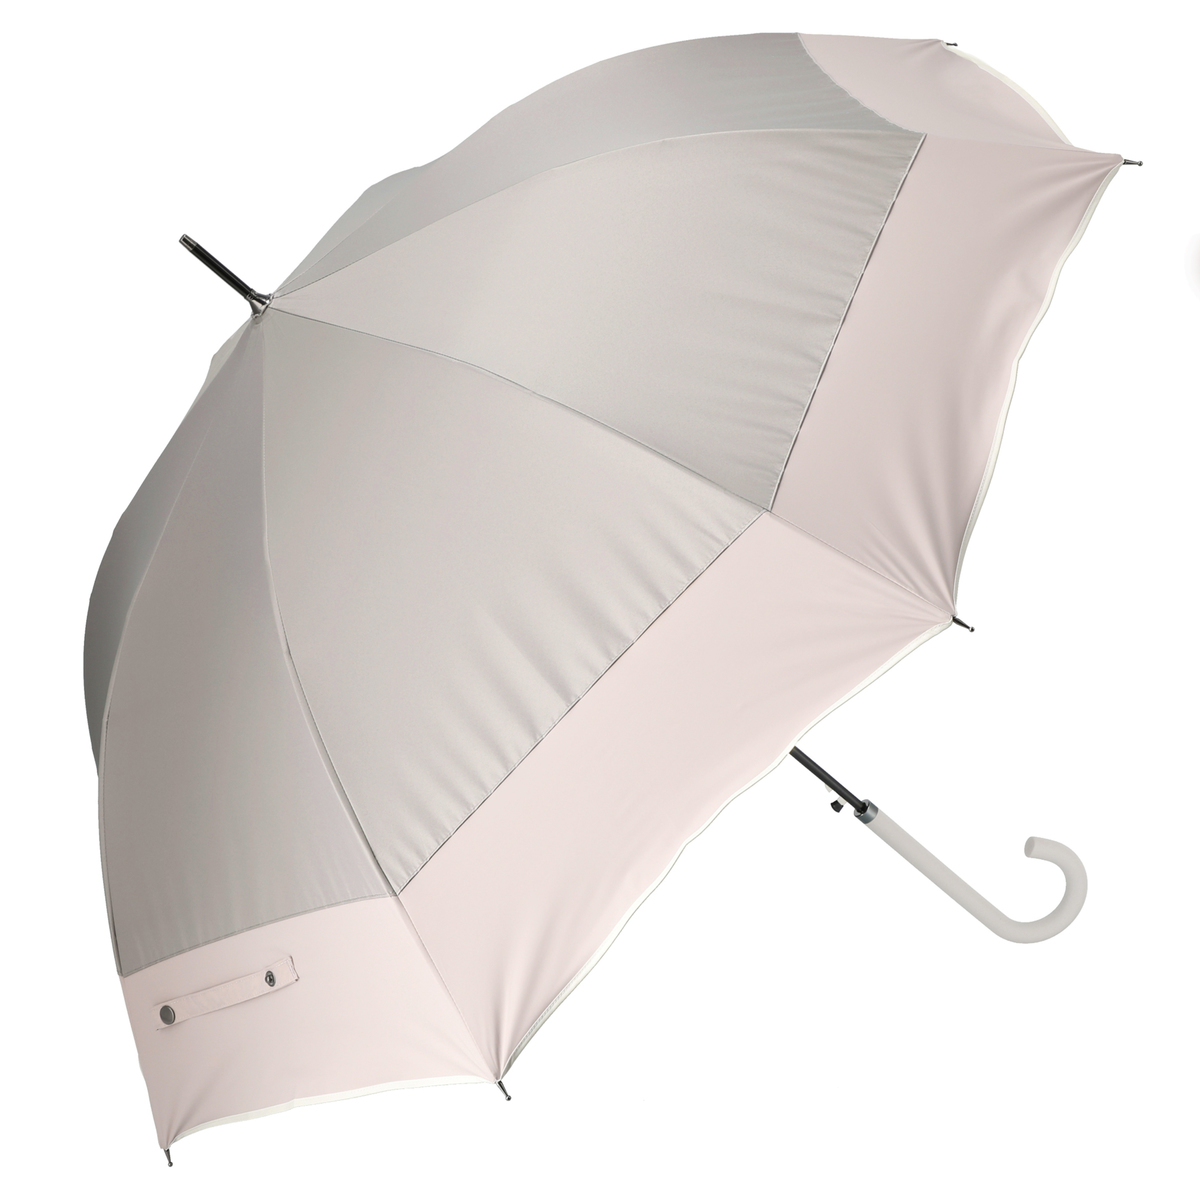  ルナジュメール UV1級遮光+耐風+撥水パイピング長傘  モカ